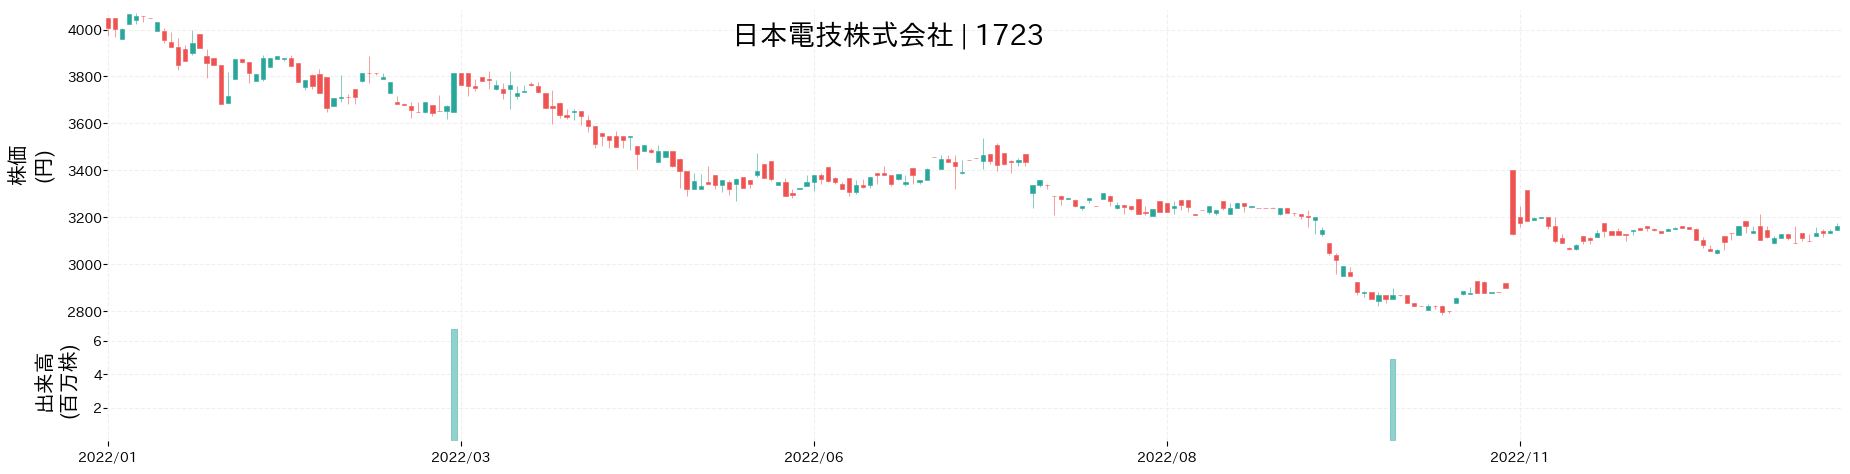 日本電技の株価推移(2022)